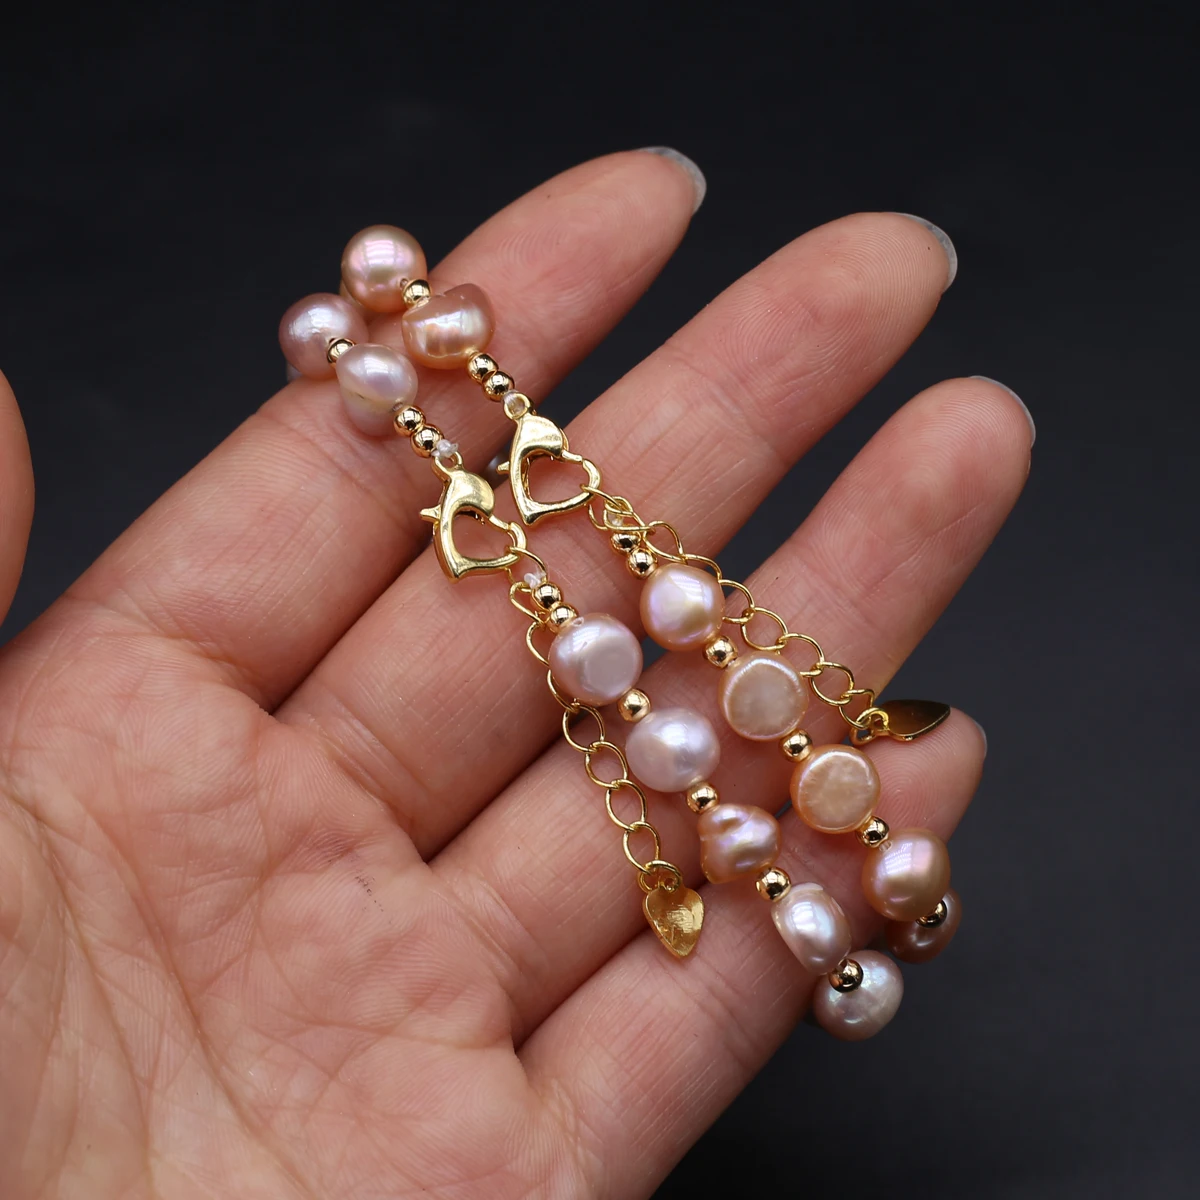 

100% Natural Freshwater Pearl Bracelets Orange Purple Pearl Bracelet for Women Cuff Bangles Wrap Beads Bracelet Jewelry 8-9mm